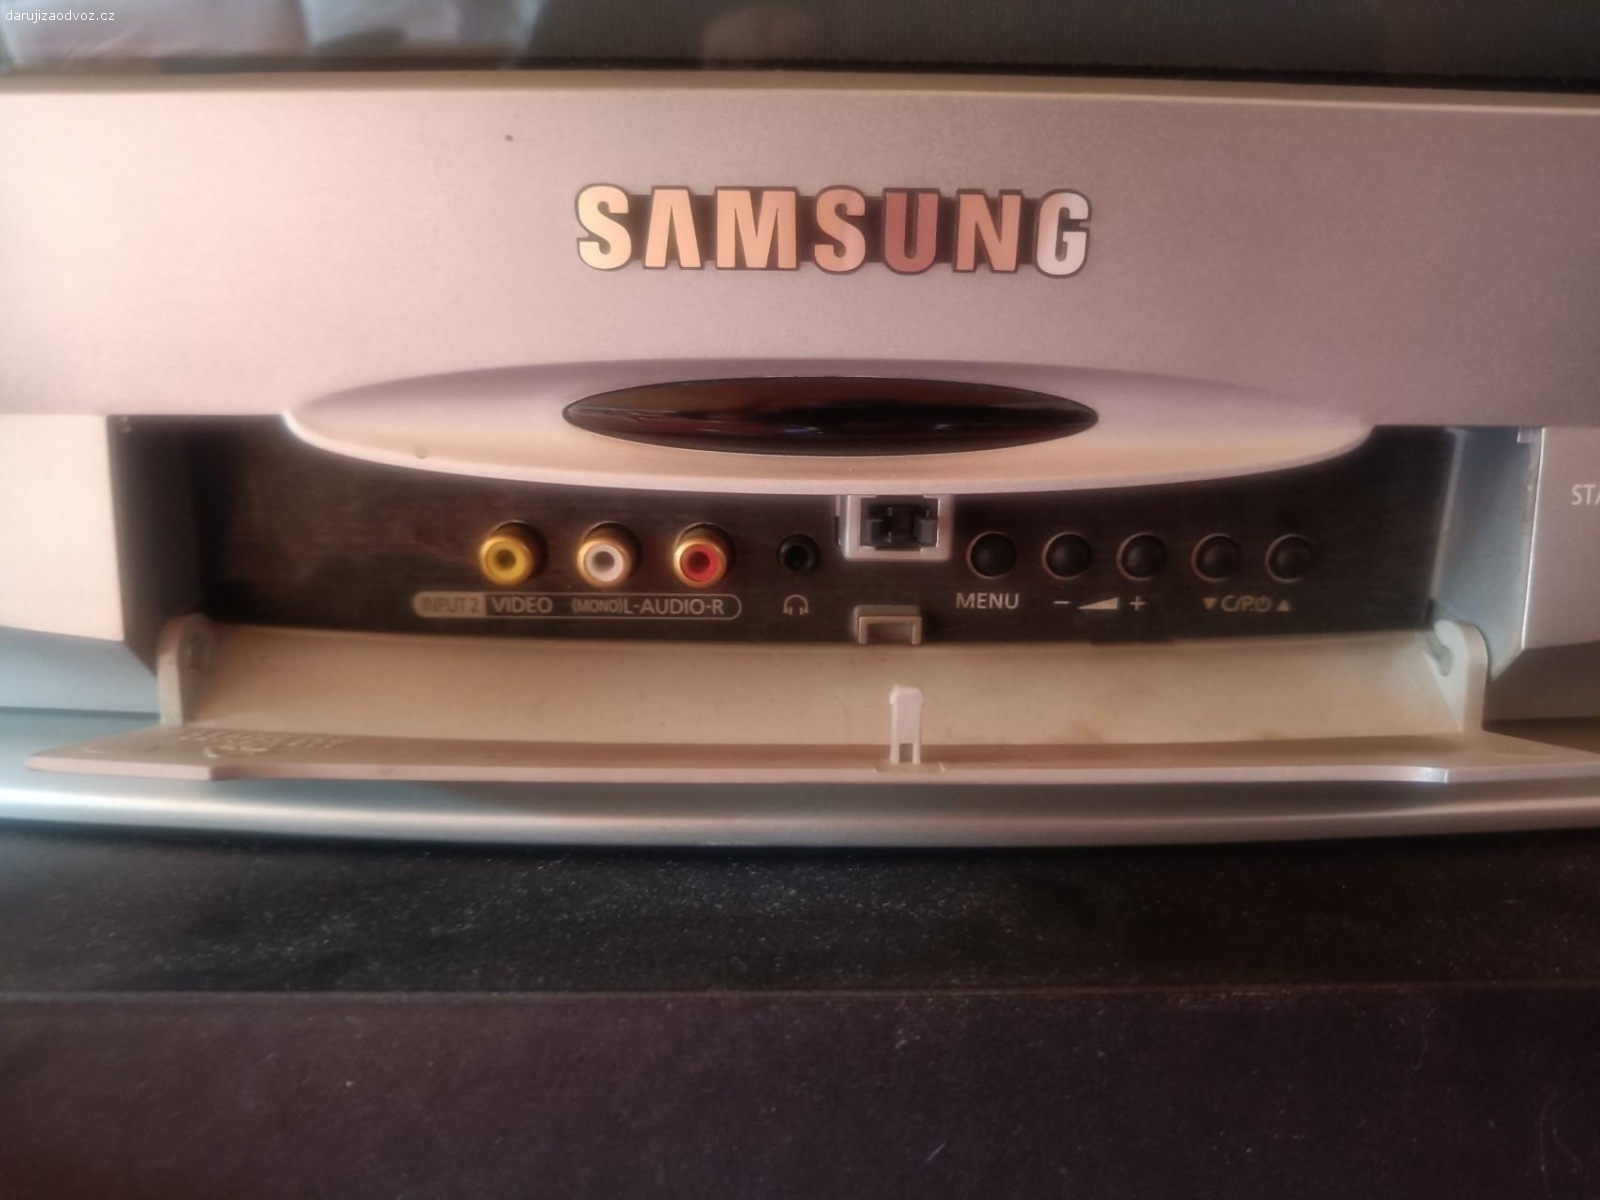 Televize Samsung +ovladač. Je stará ale funguje, s ovladačem, detaily viz foto. Předání Kladruby u Strakonic.